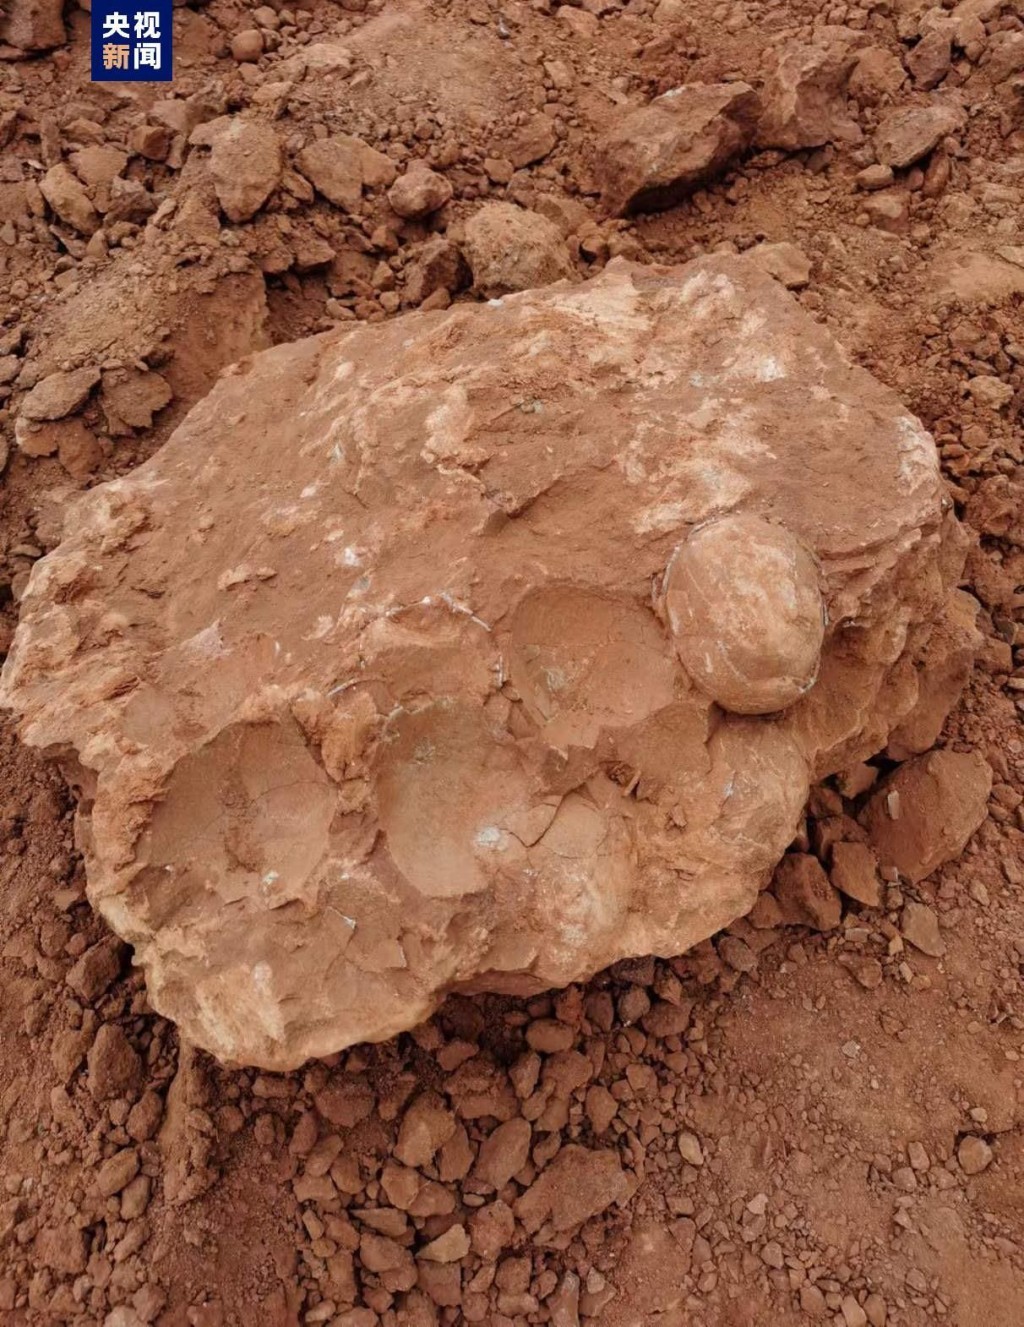 挖出三枚恐龙蛋化石，一枚化石露出大半，外壳有部分损破脱落，另两枚部分露出，保存完好。